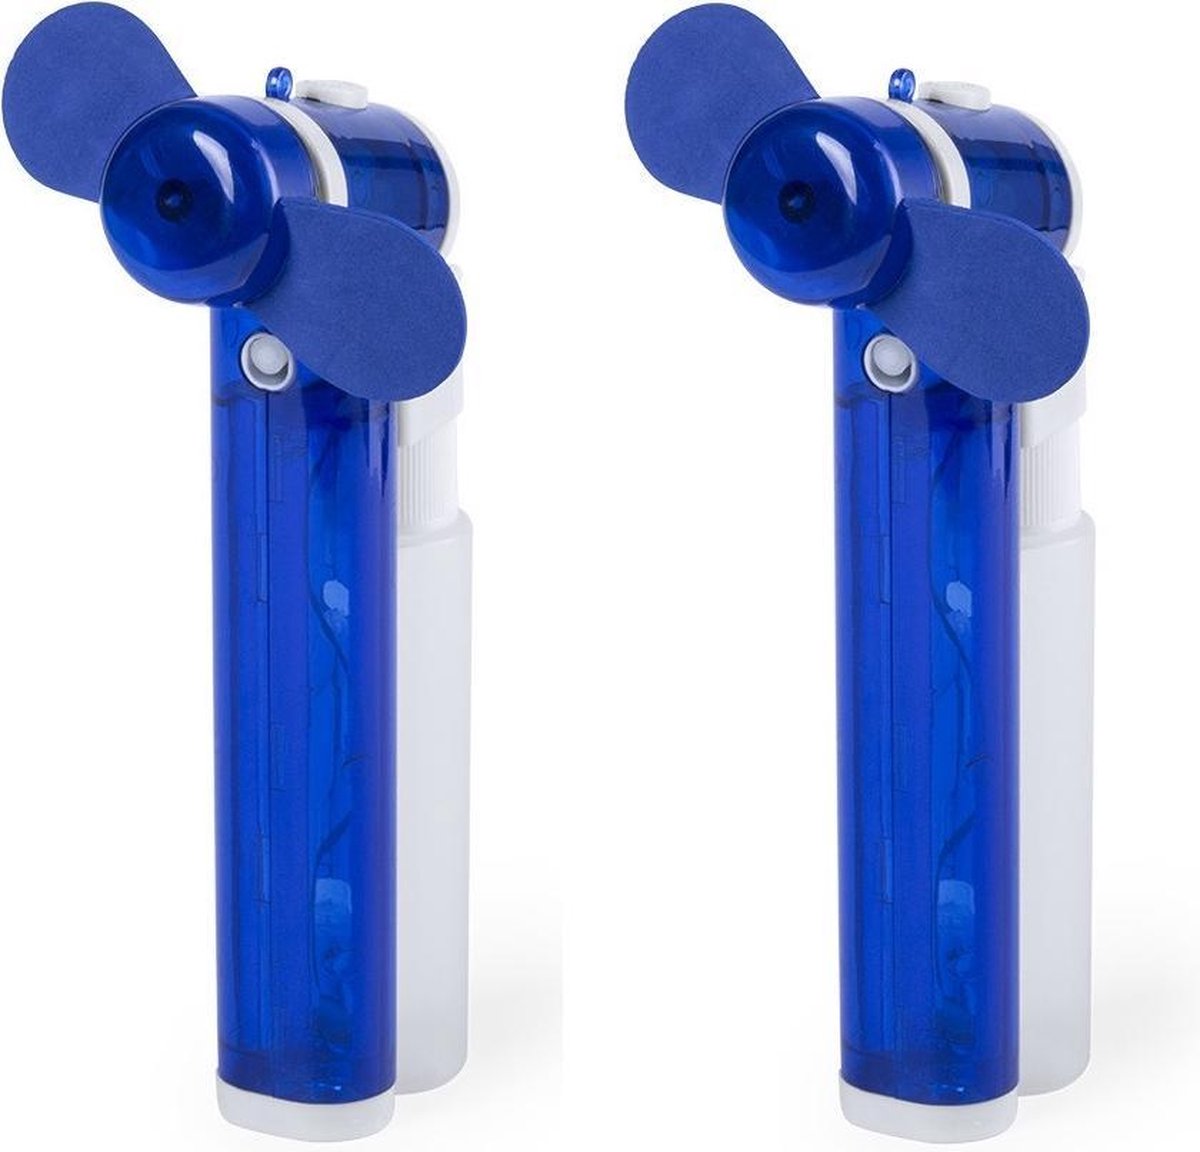 Set van 4x stuks zak ventilator/waaier blauw met water verstuiver - Mini hand ventilators van 16 cm